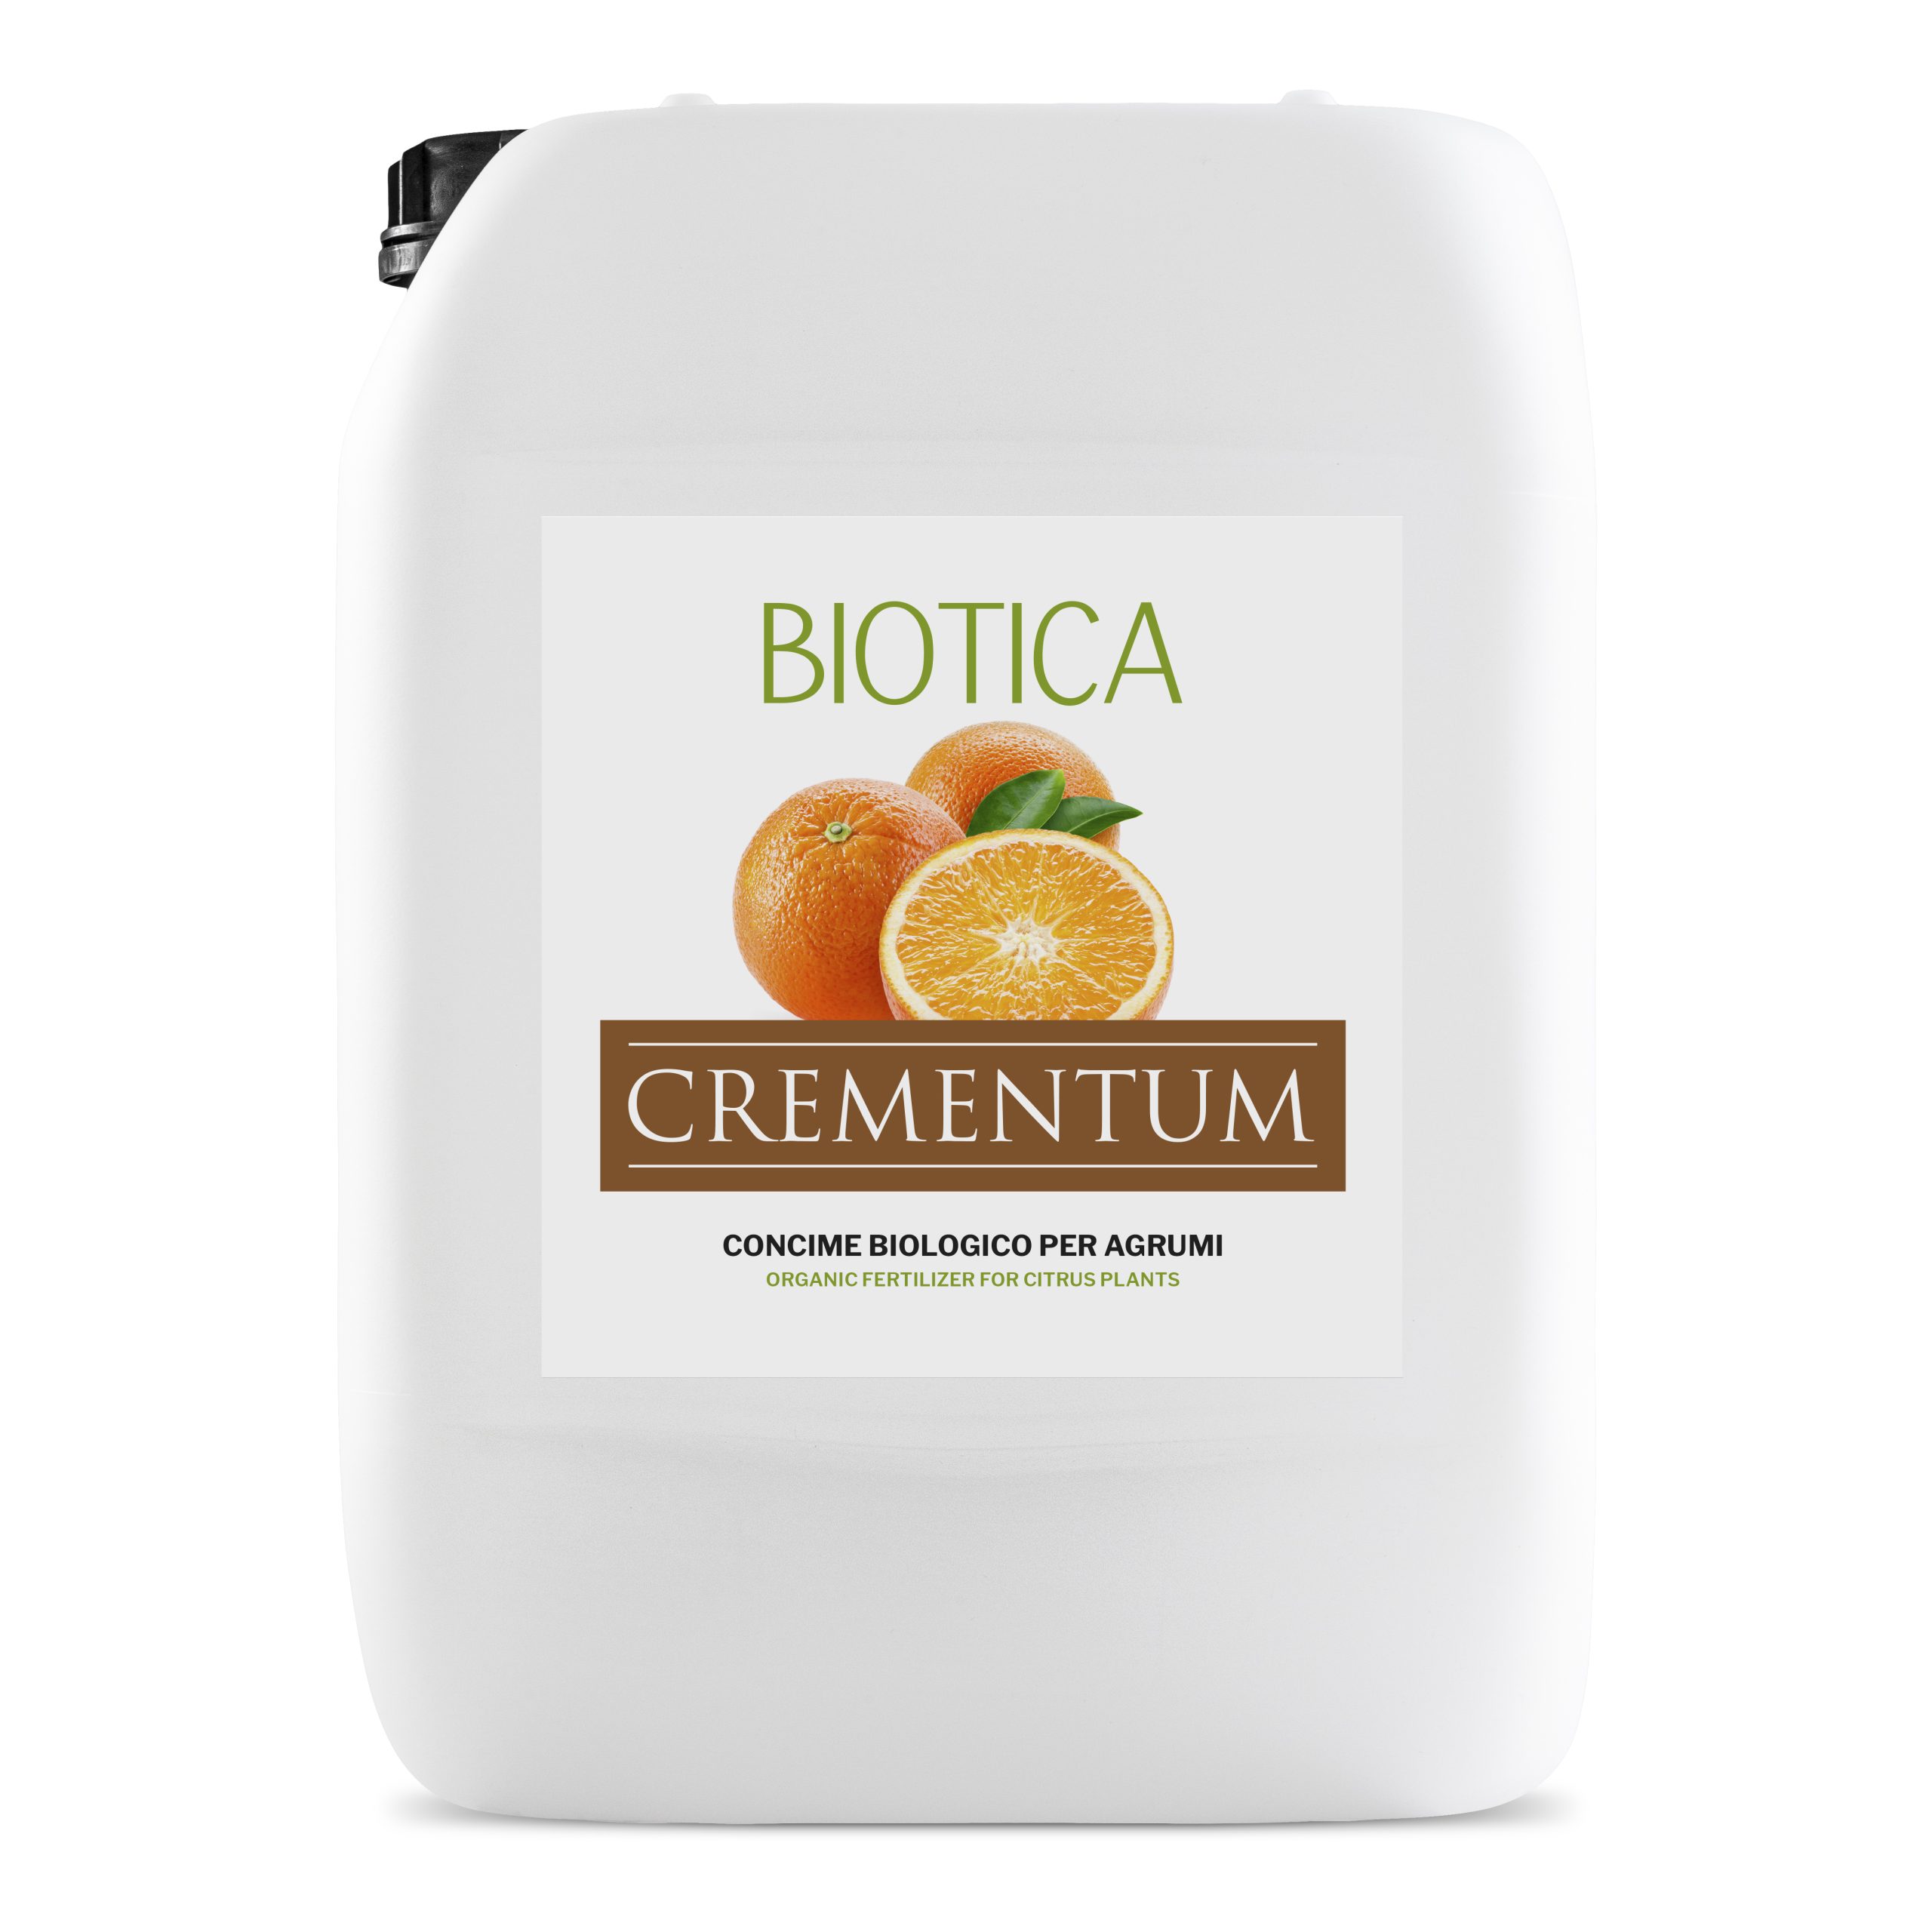 Concime organico pellettato BIOLOGICO per olivo orto limoni agrumi pomodori